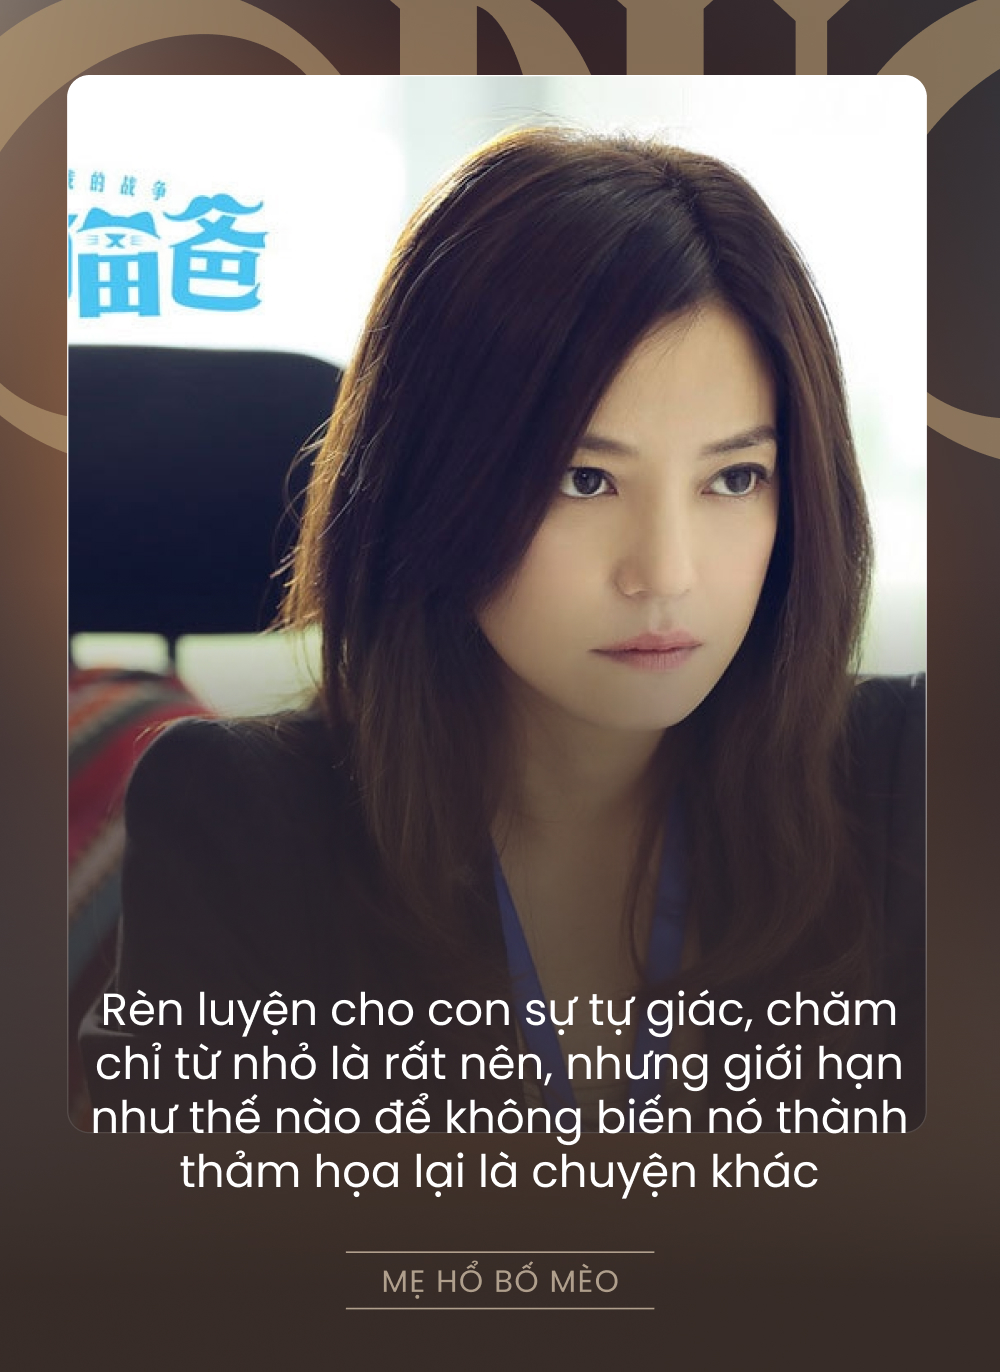 Phim gia đình hay nhất của Triệu Vy - Đổng Khiết: Được Minh Hằng diễn lại, là bài học đắt giá cho các quý cô kiếm nhiều tiền hơn chồng - Ảnh 2.